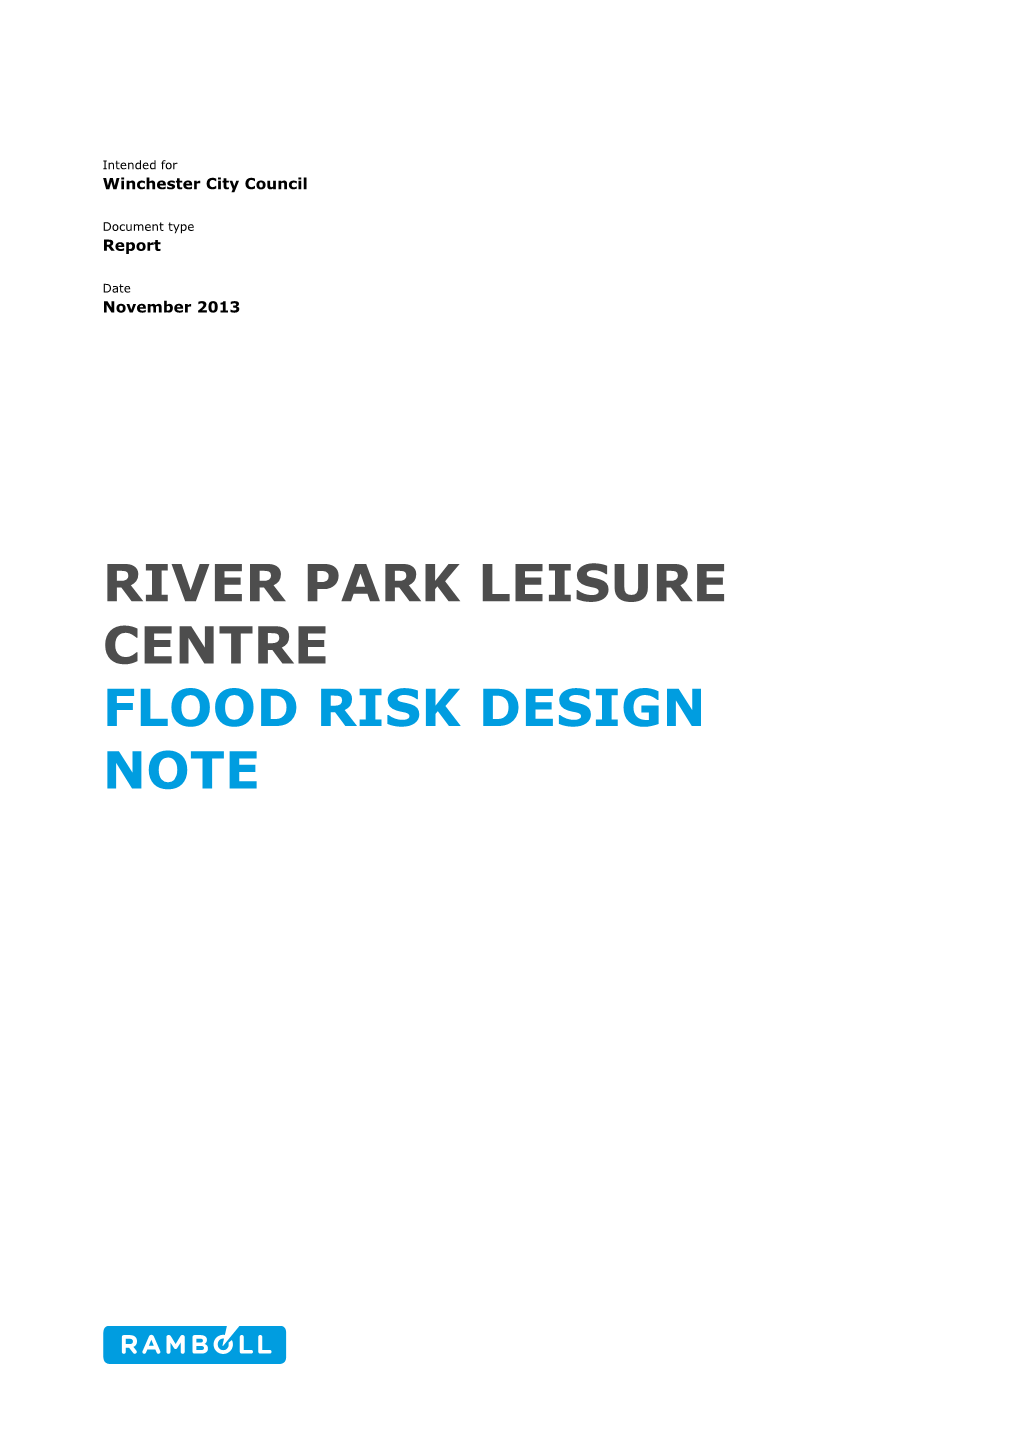 Flood Risk Assessment Nov 2013